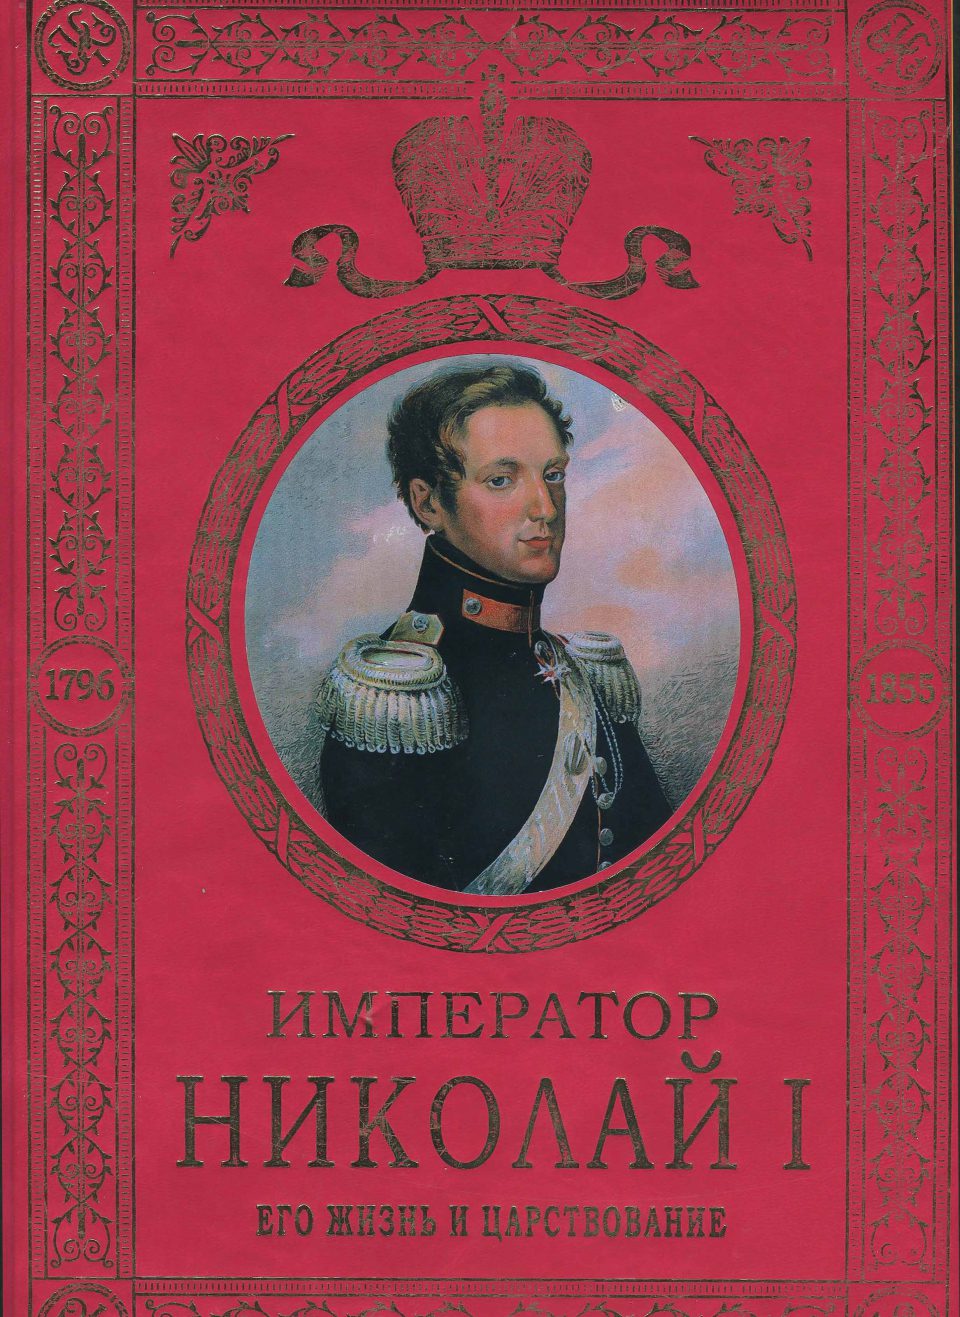 Книга про императора